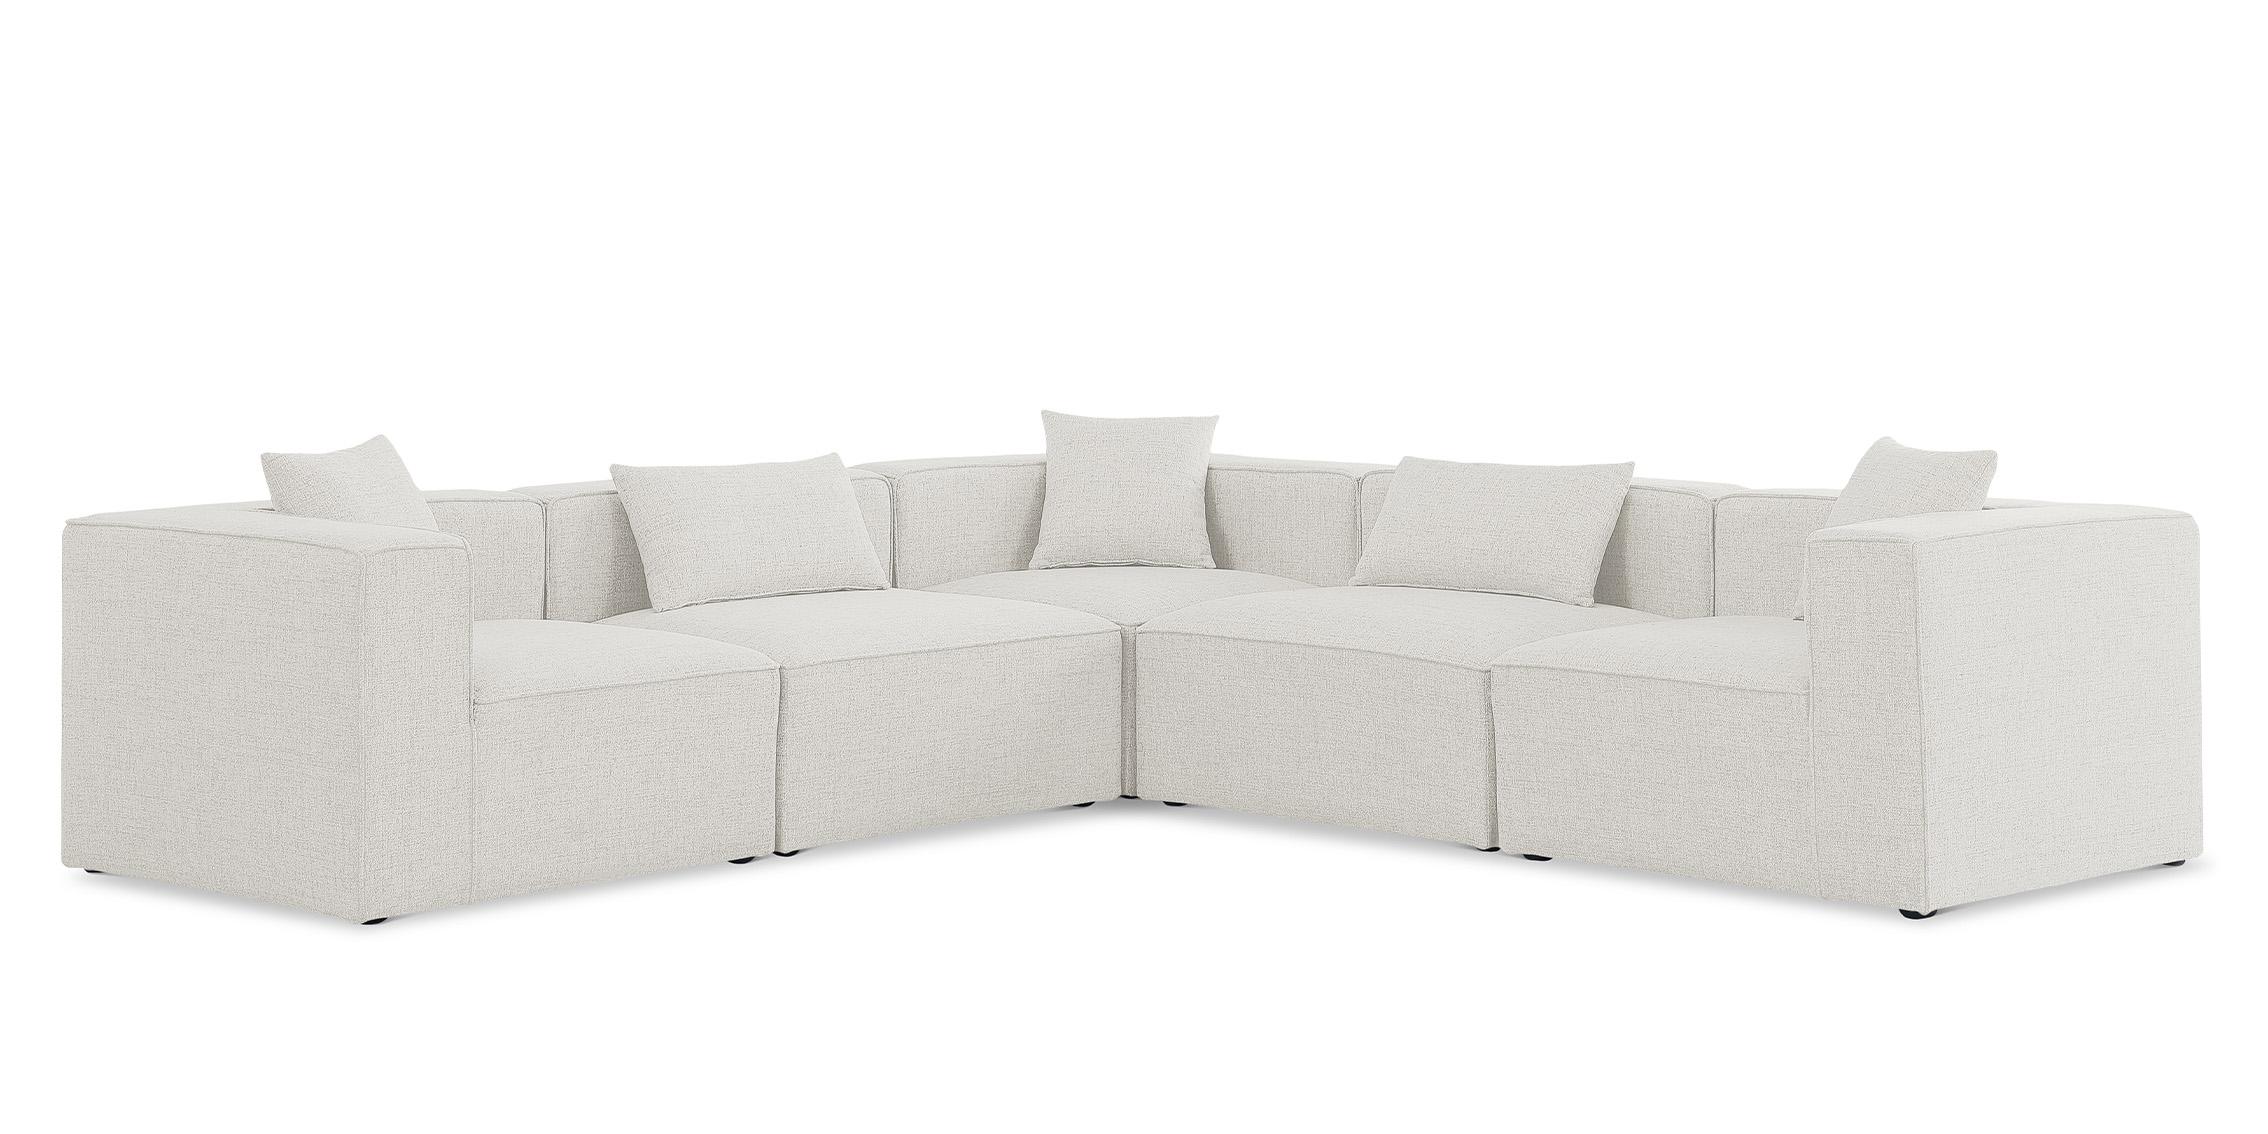 Contemporary, Modern Modular Sectional Sofa CUBE 630Cream-Sec5C 630Cream-Sec5C in Cream Linen